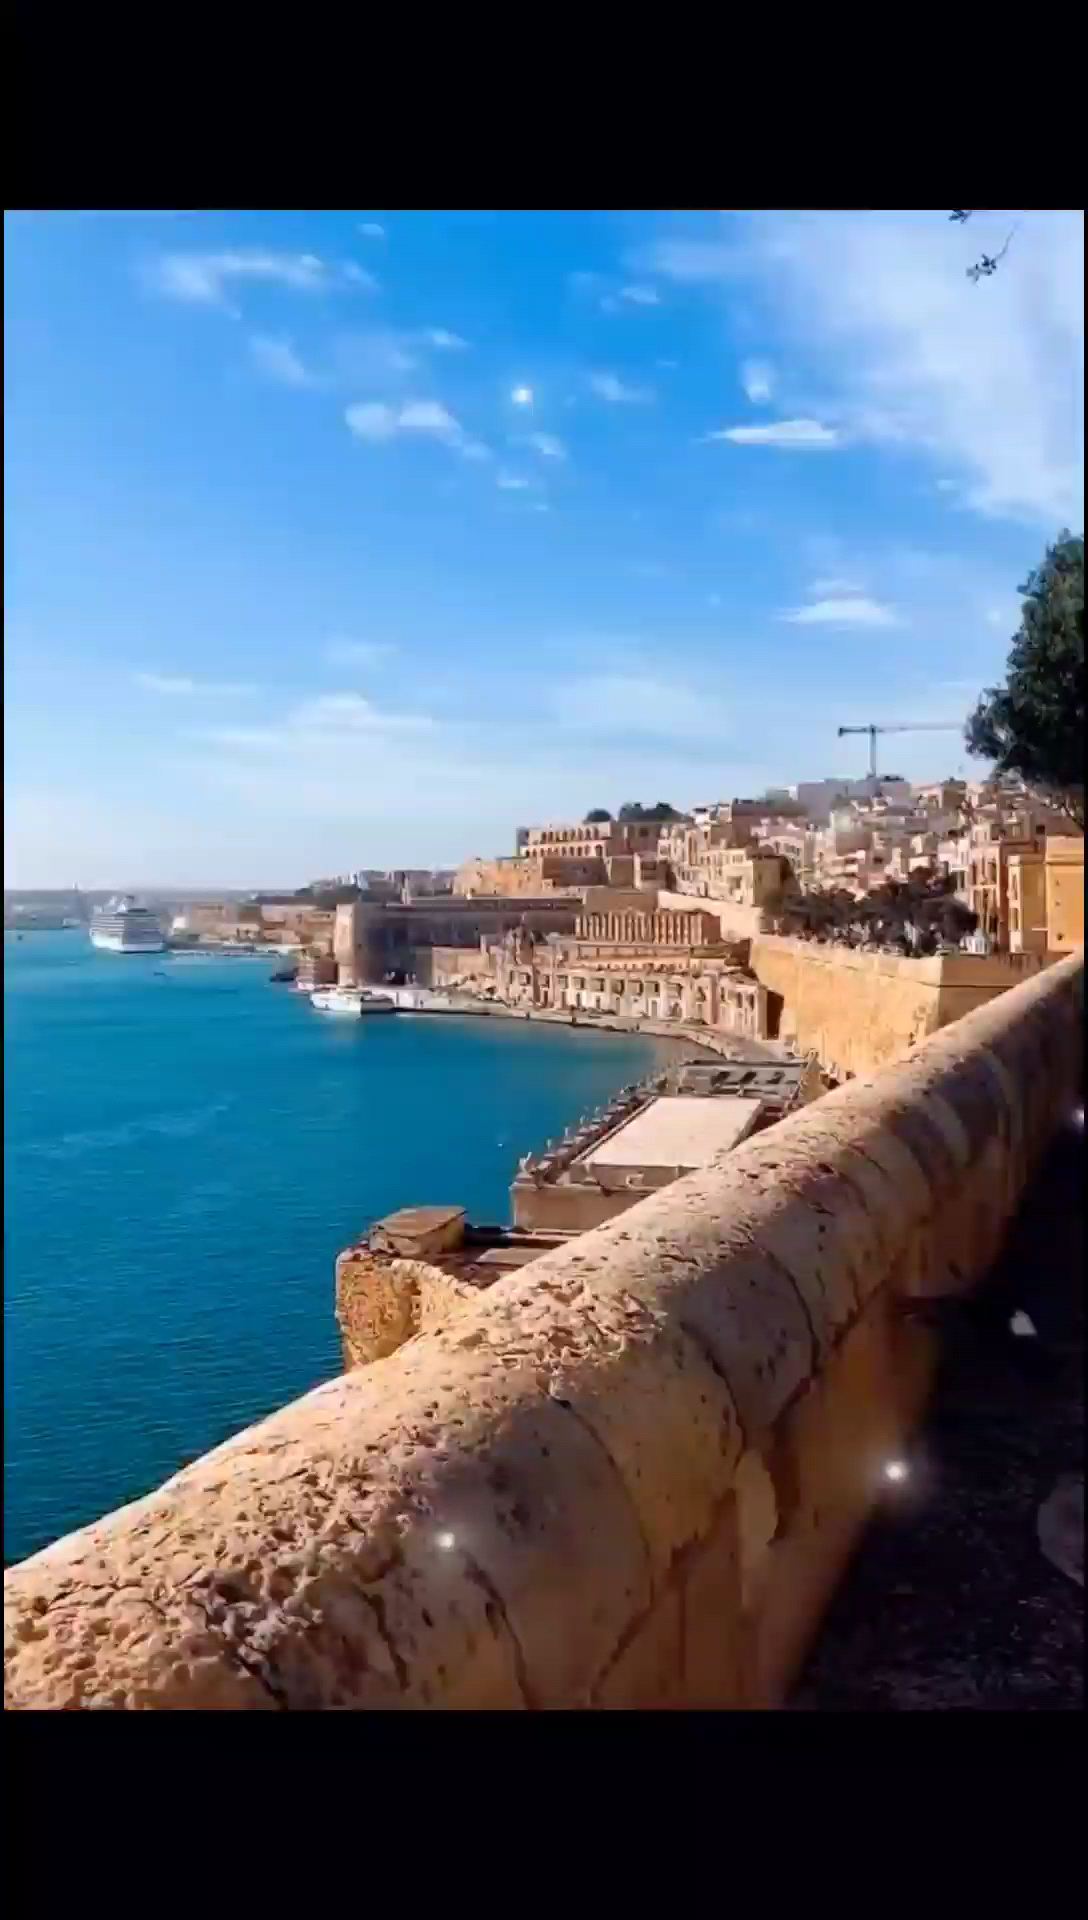 马耳他首都一瓦莱塔被誉为“骑士之都”文化之都” “世界遗产之城”欧洲瓦莱塔的街头巷尾随处可见骑士元素